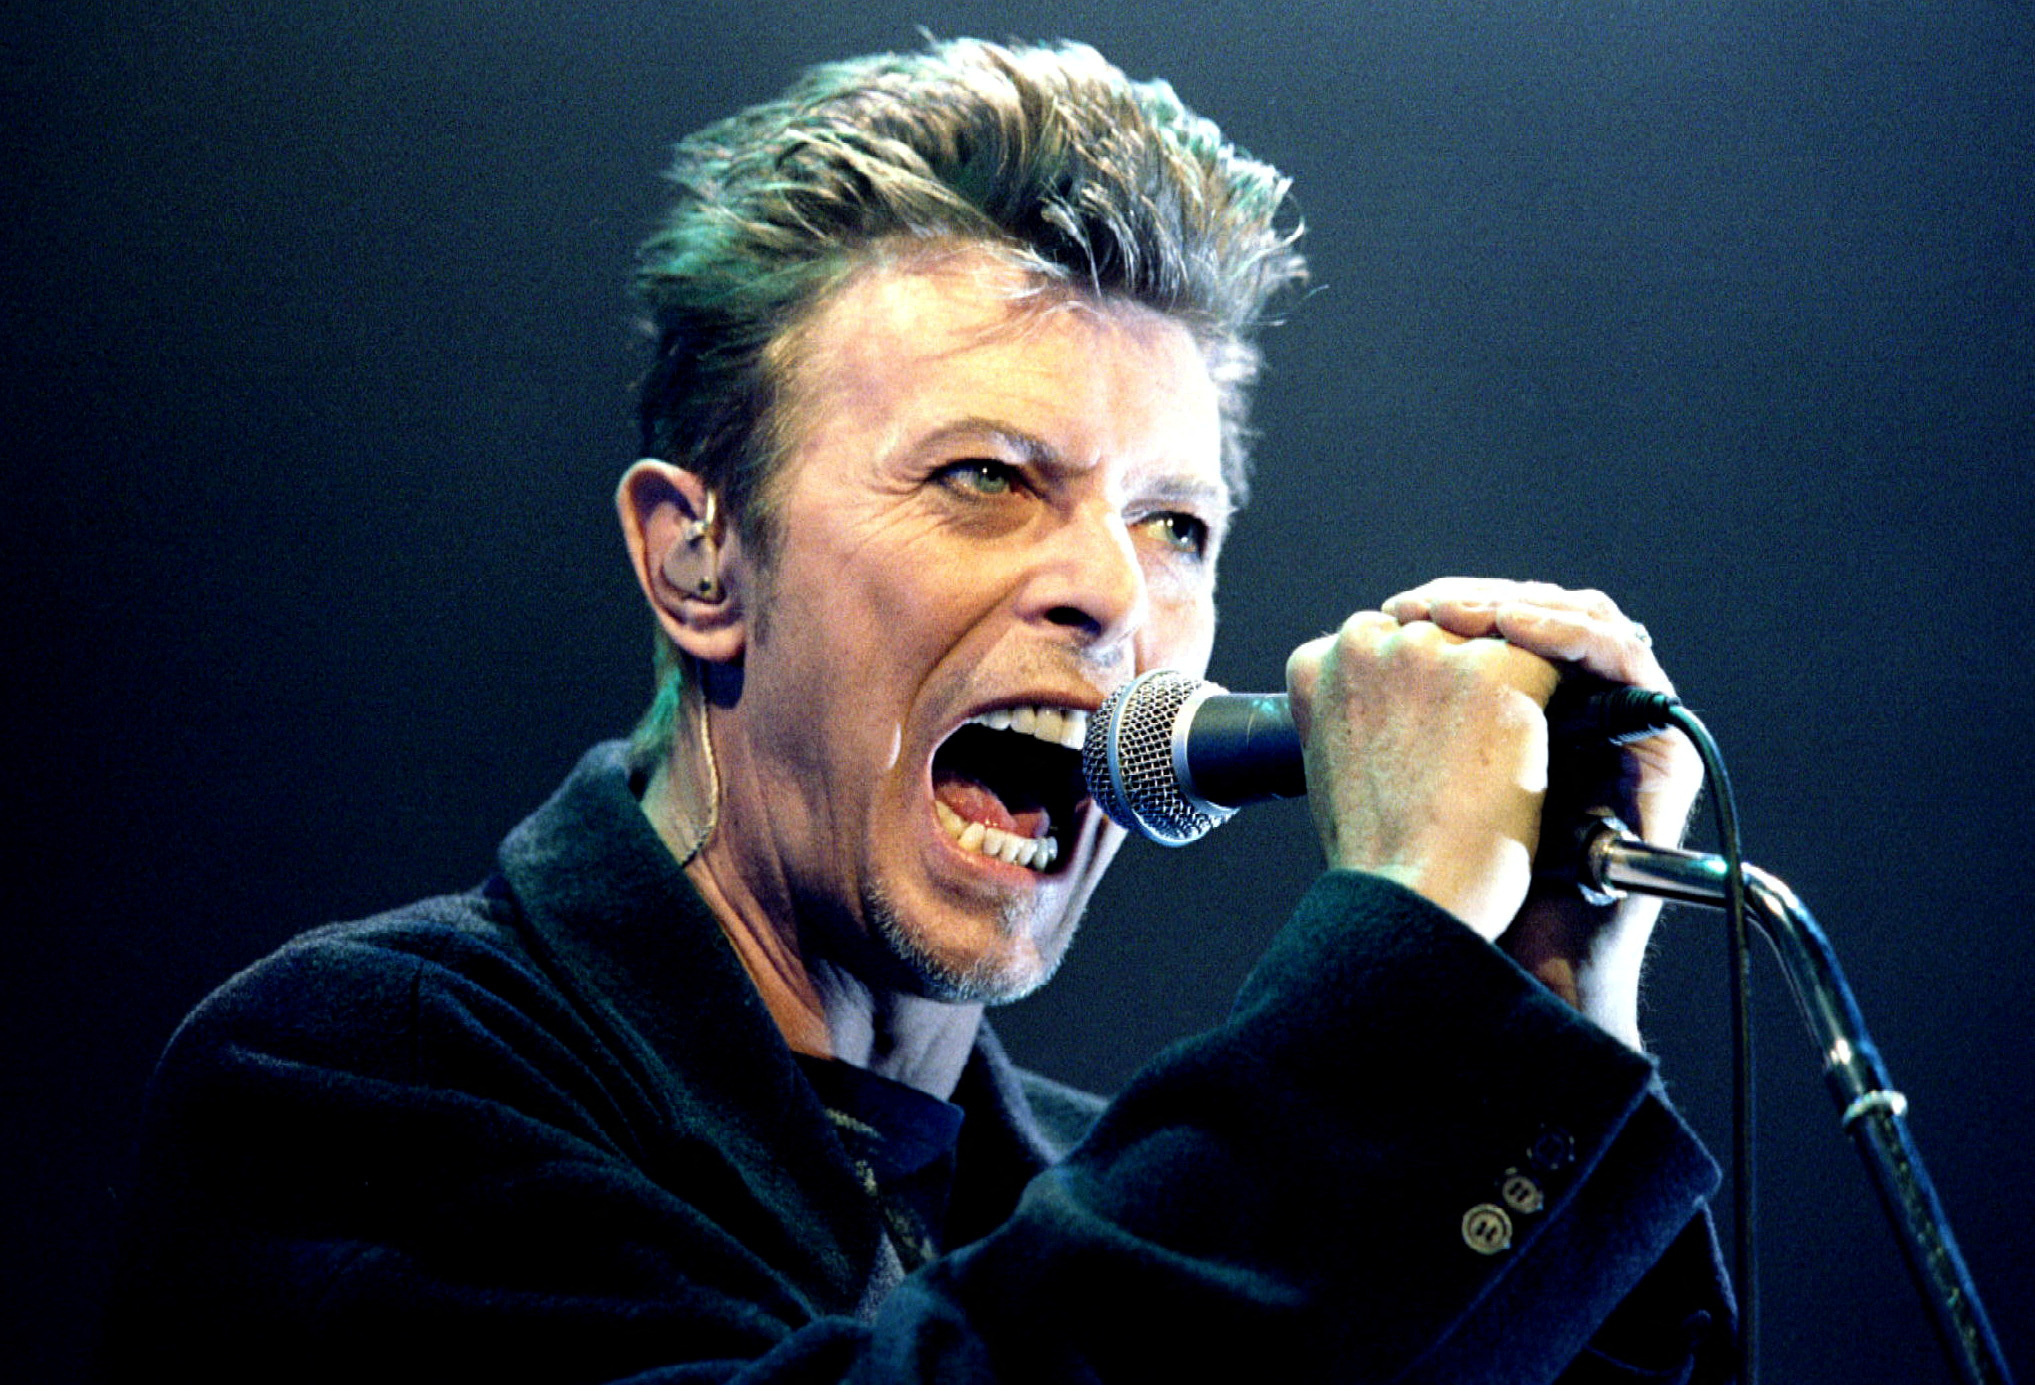 La vida de David Bowie es contada de forma poco usual en el documental. (REUTERS/Leonhard Foeger)